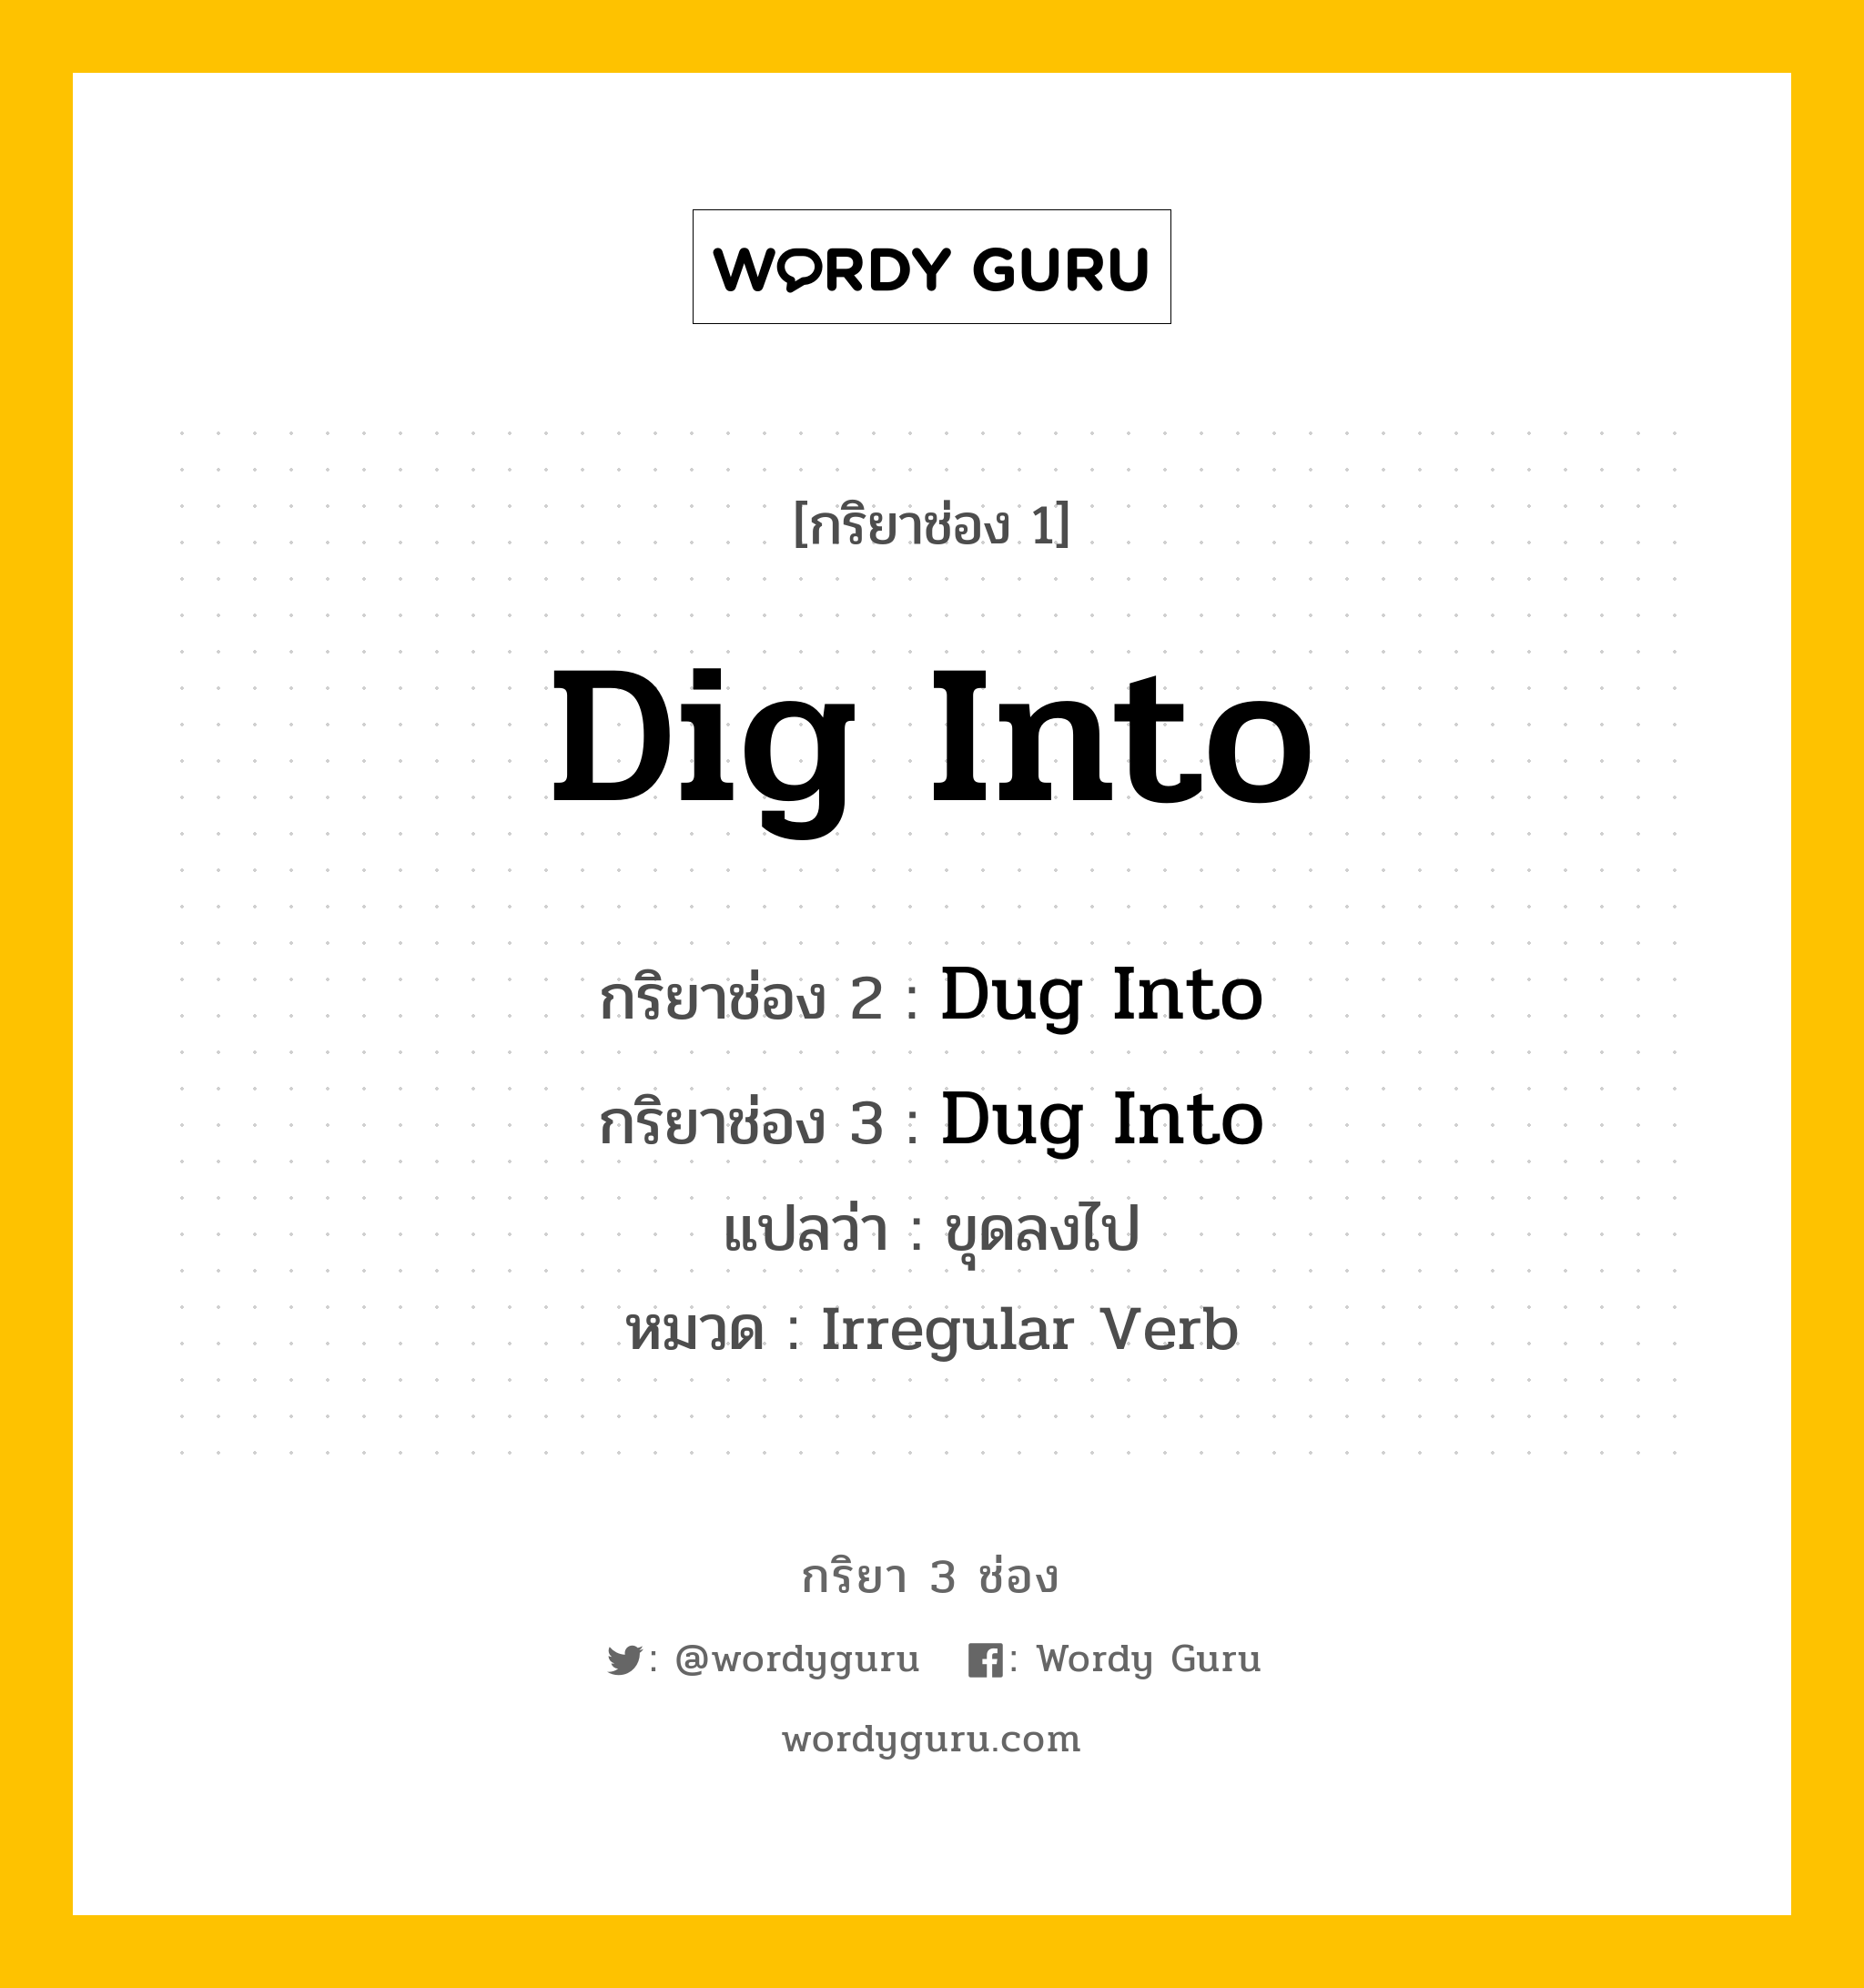 กริยา 3 ช่อง: Dig Into ช่อง 2 Dig Into ช่อง 3 คืออะไร, กริยาช่อง 1 Dig Into กริยาช่อง 2 Dug Into กริยาช่อง 3 Dug Into แปลว่า ขุดลงไป หมวด Irregular Verb หมวด Irregular Verb